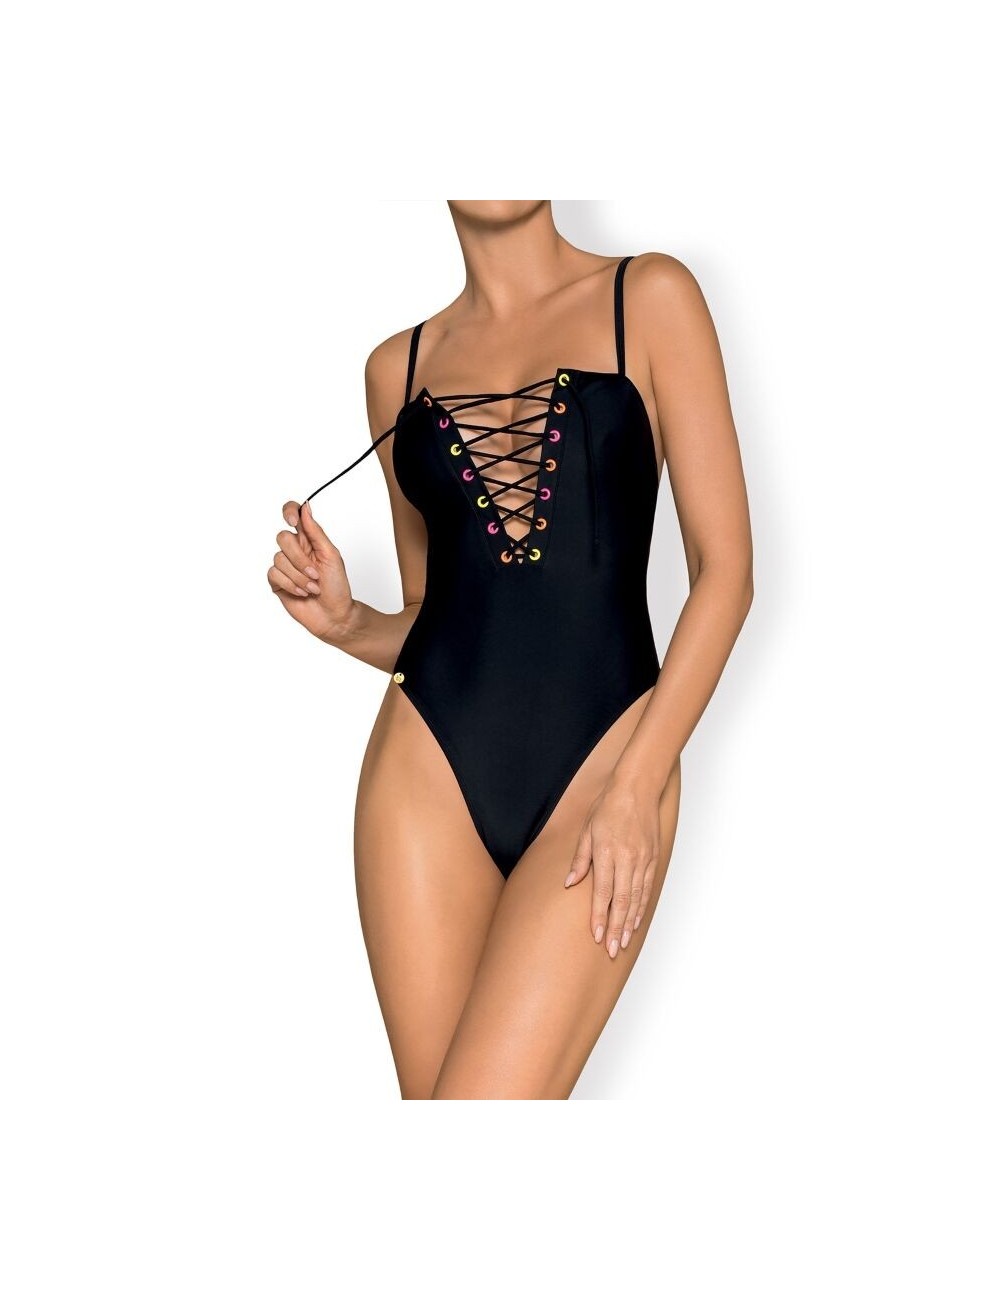 Lingerie - Maillots de bain et tenues de plage - Obsessive - beverelle baãador negro m - Obsessive Summer